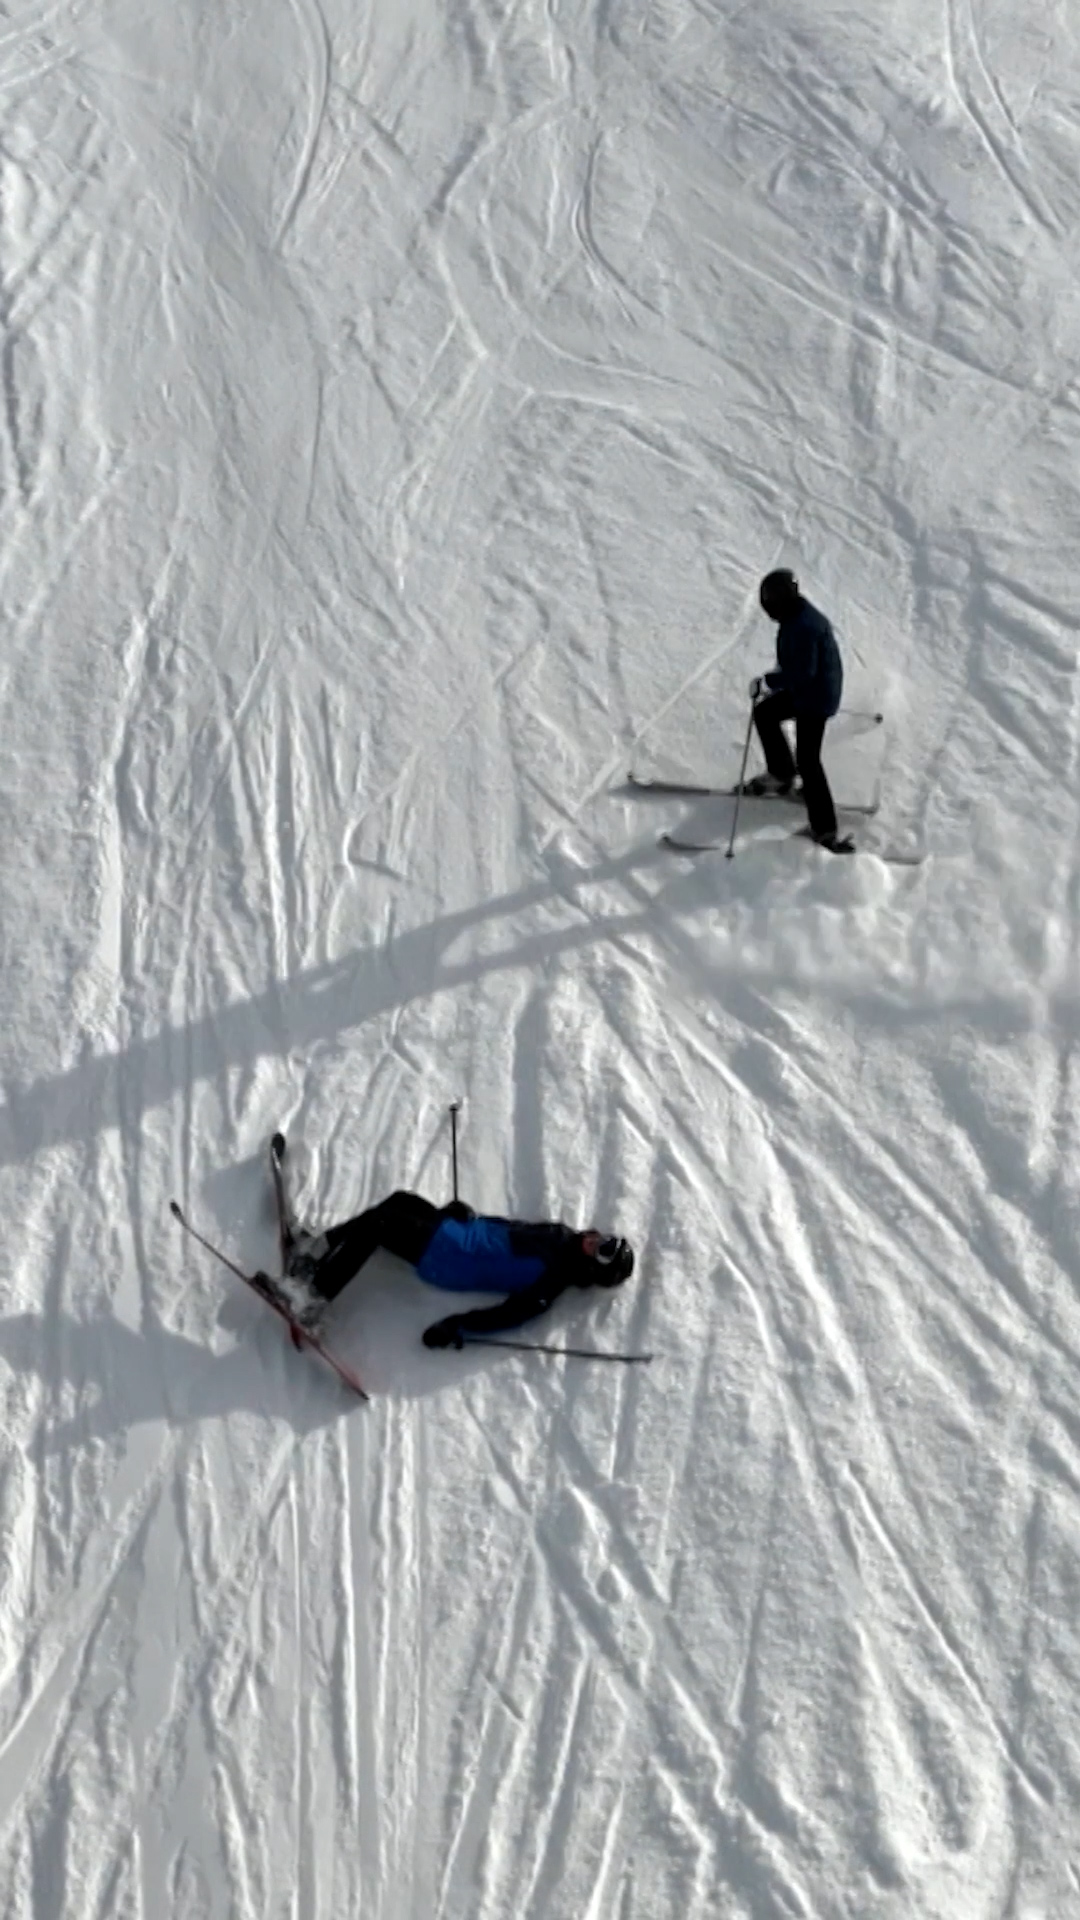 Несчастные случаи с участием лыжников более серьезны и дороги в лечении.